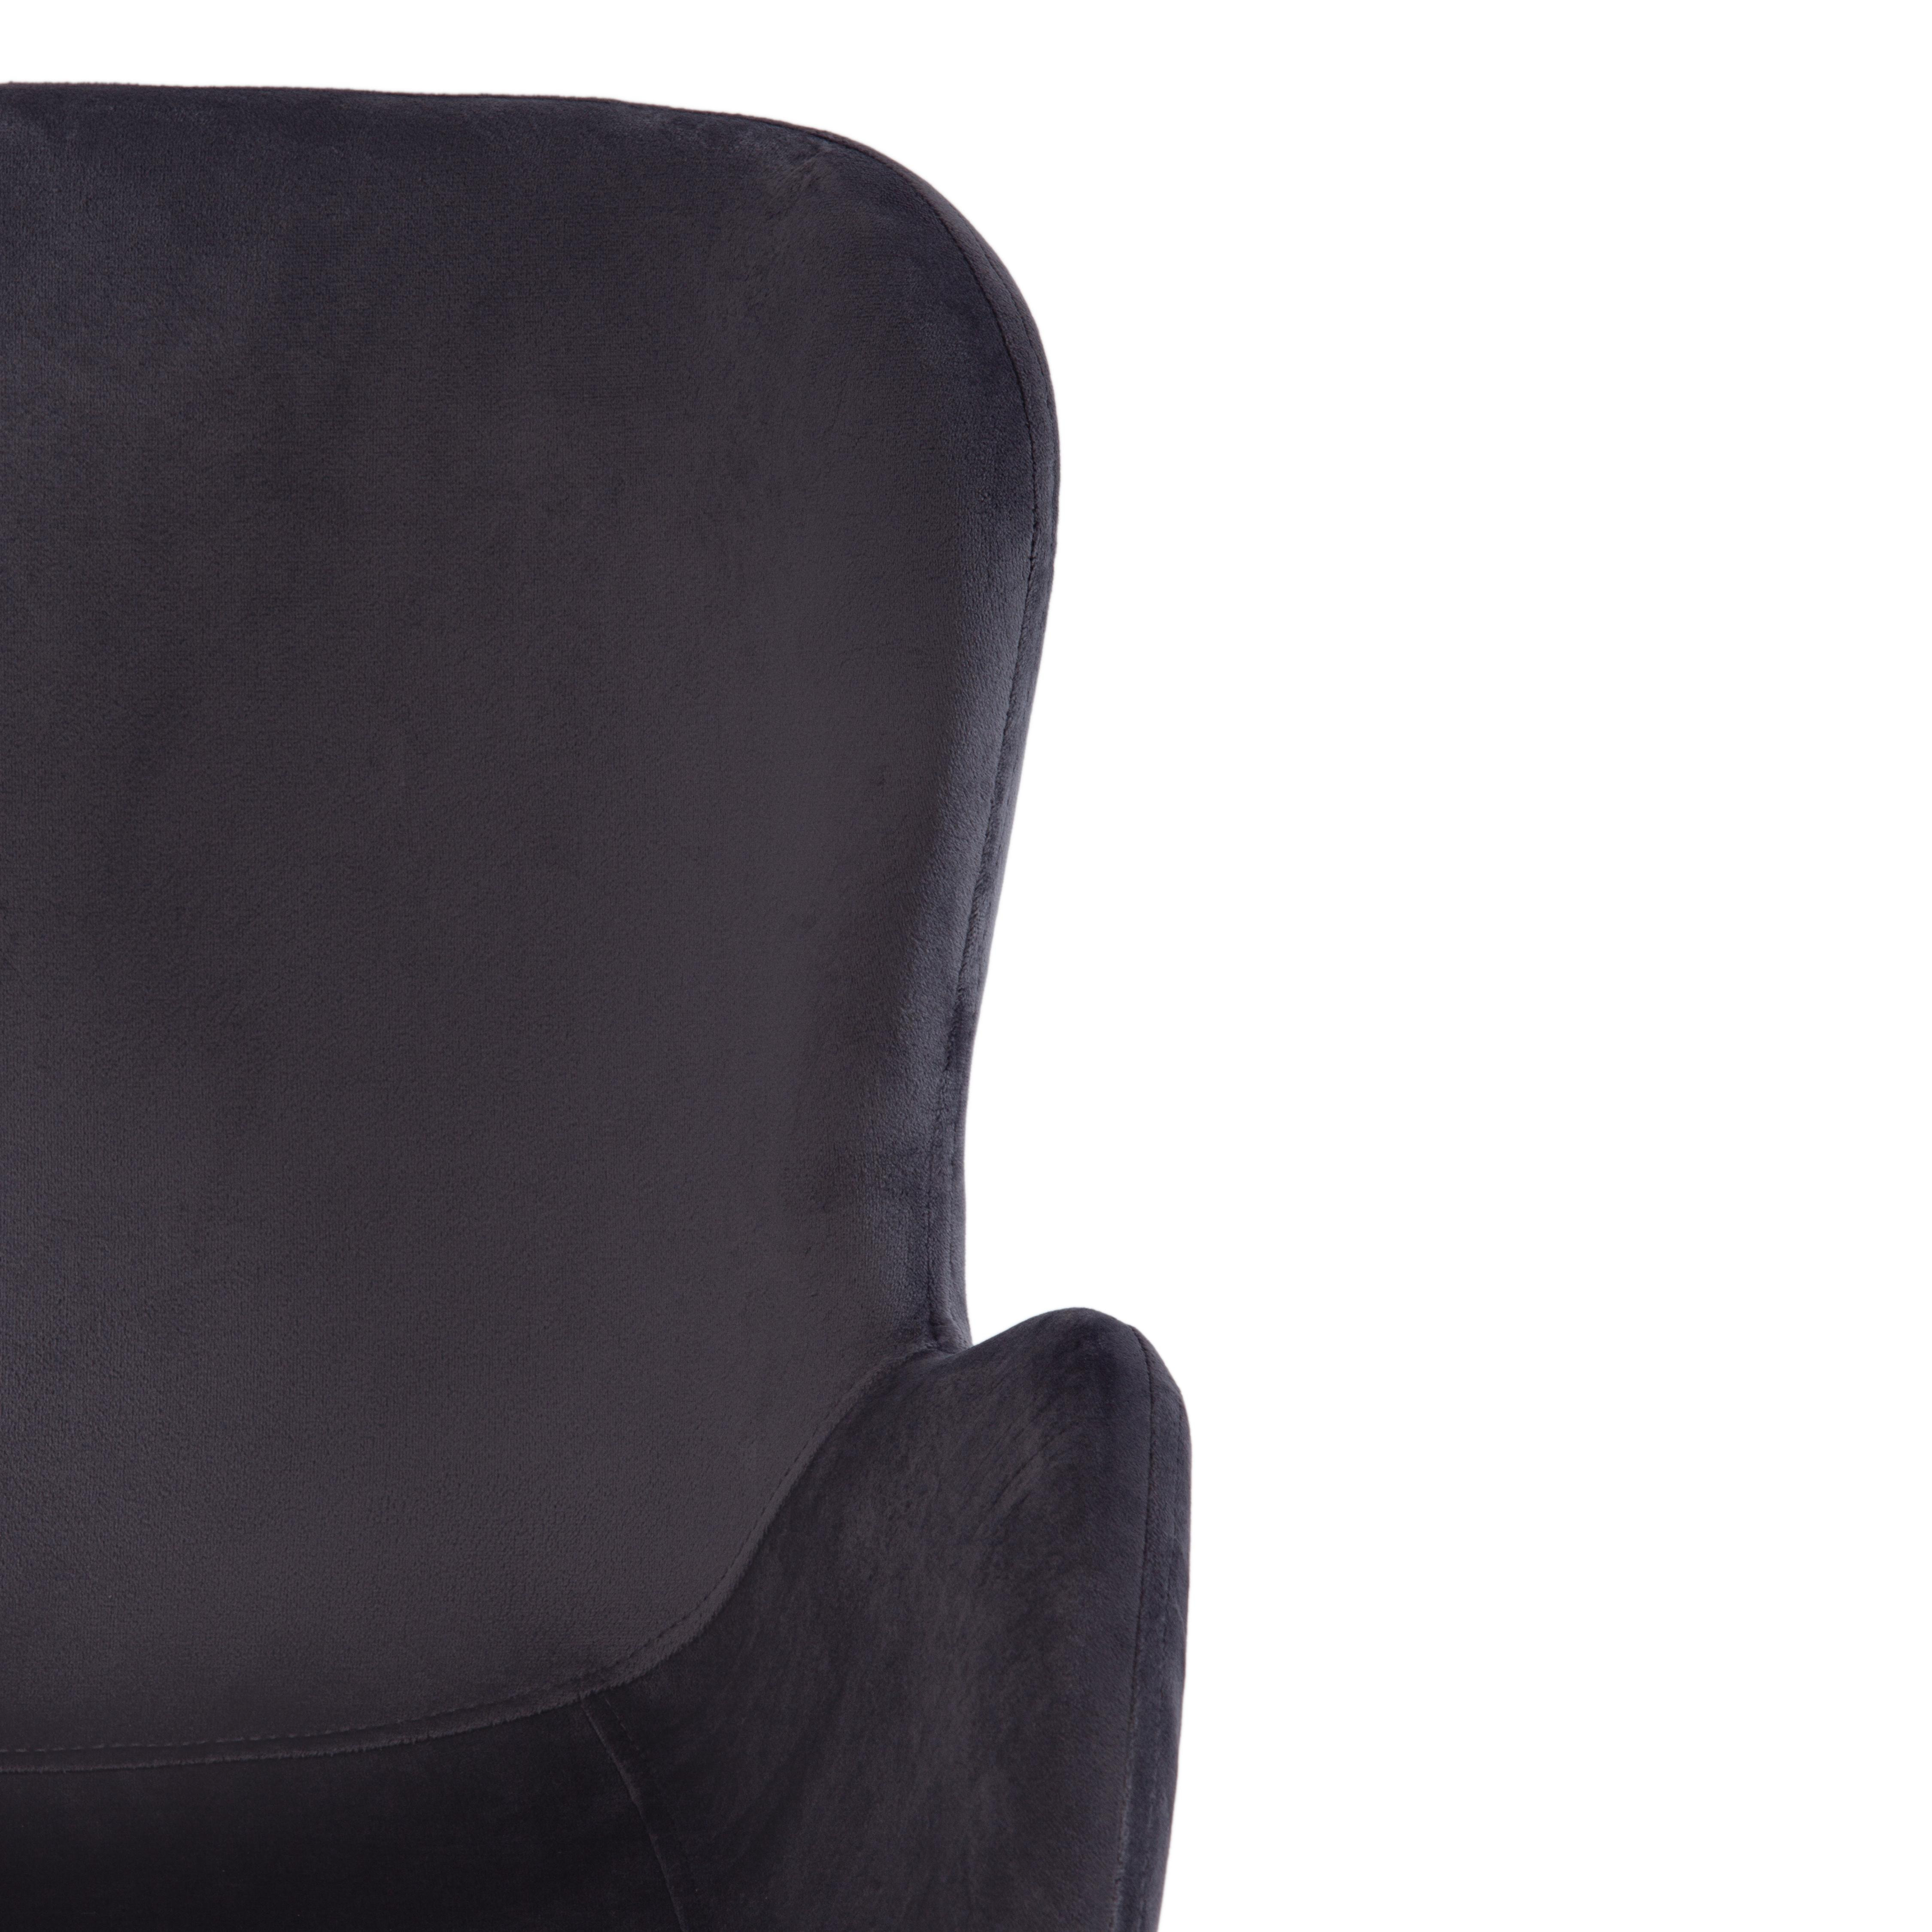 Кресло BOEING ( mod. 9120) металл/вельвет, 42x58x84.5x47см, серый (HLR 21)/черный